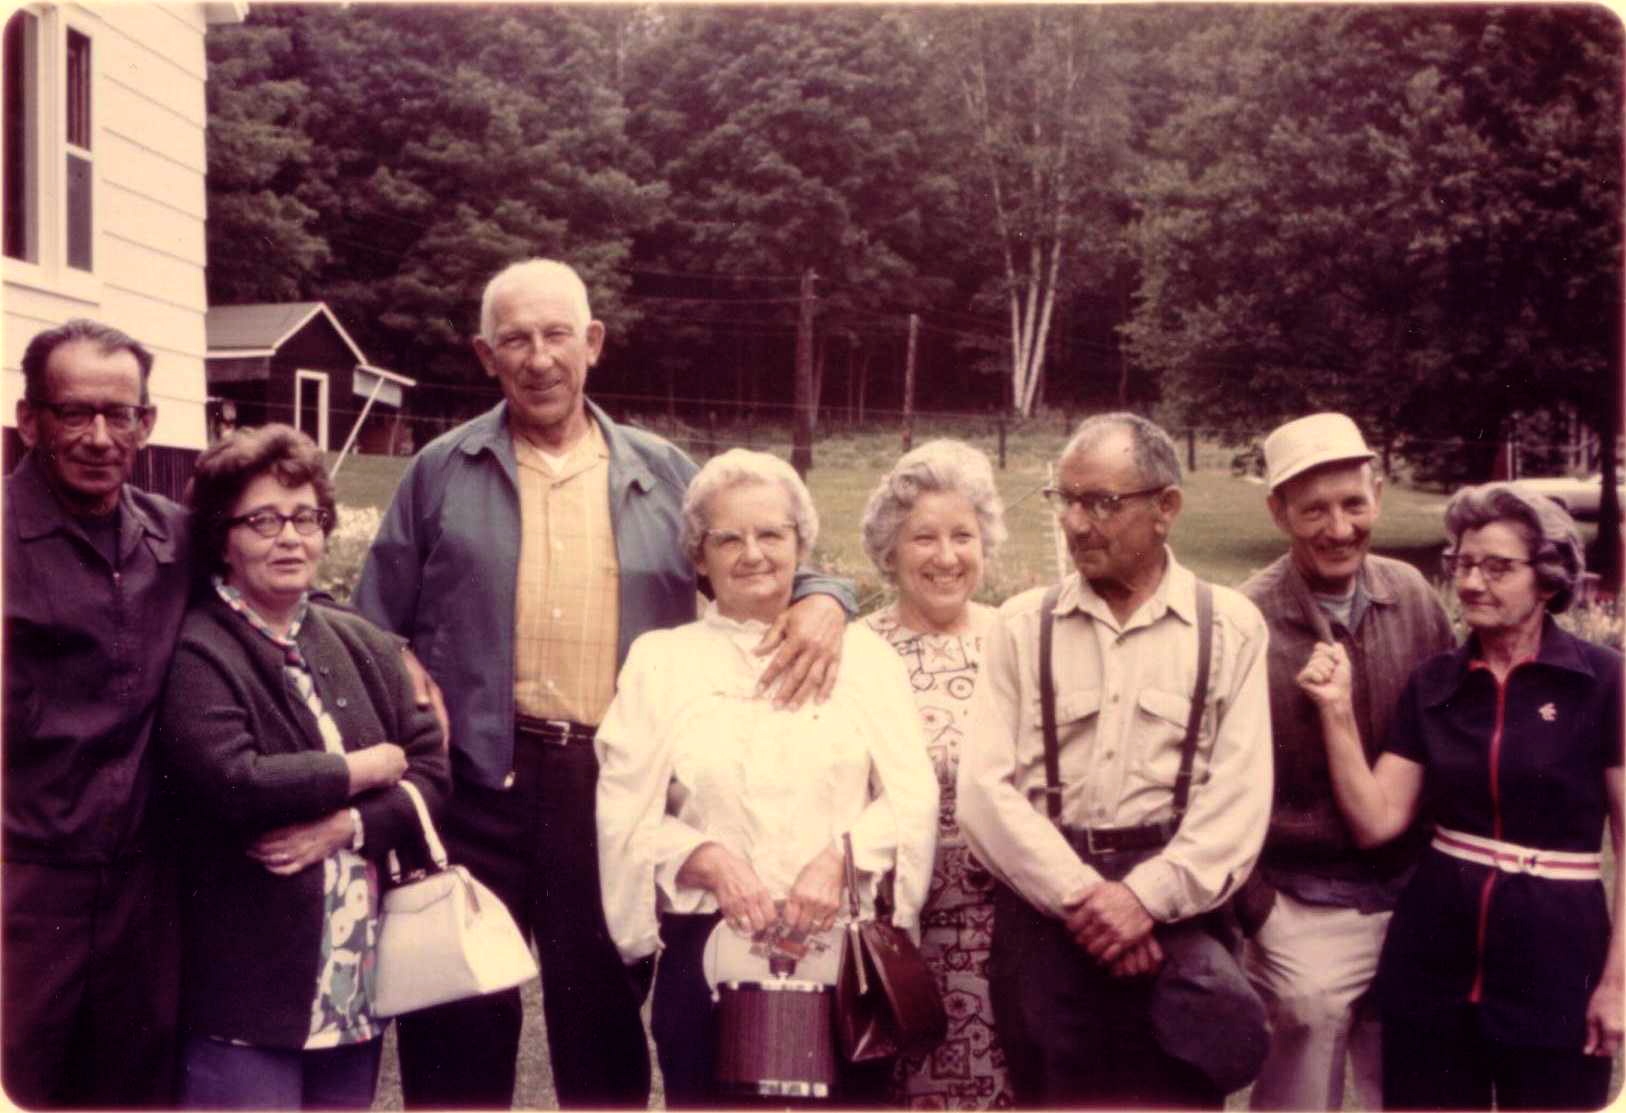 John Laurent & family, 1970's?